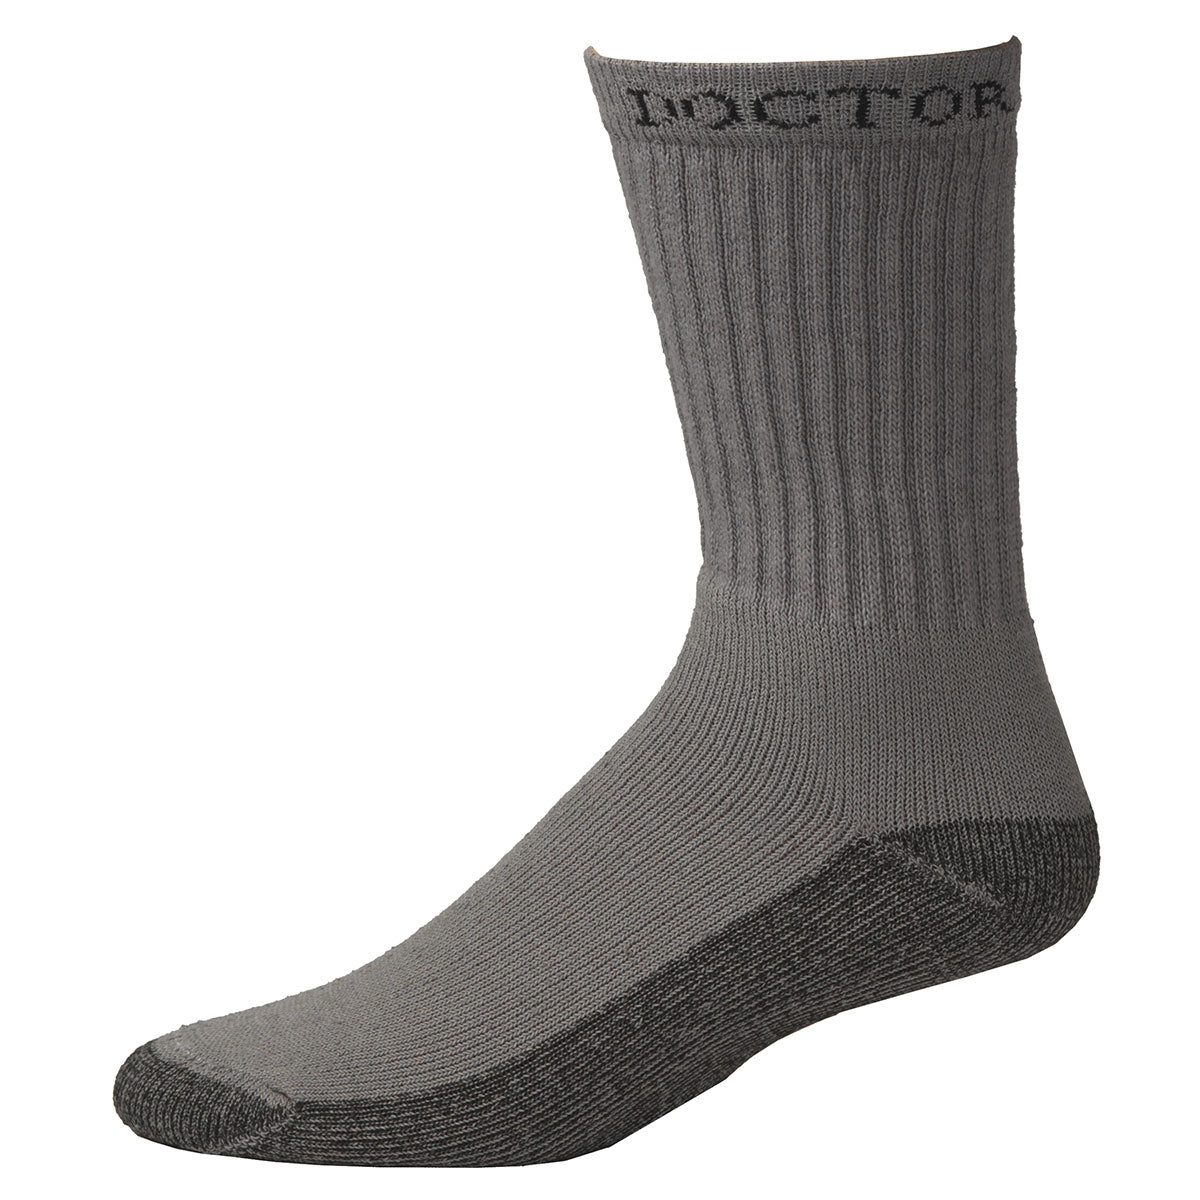 Boot Doctor Men's Workboot Socks 3-Pack (0498806)